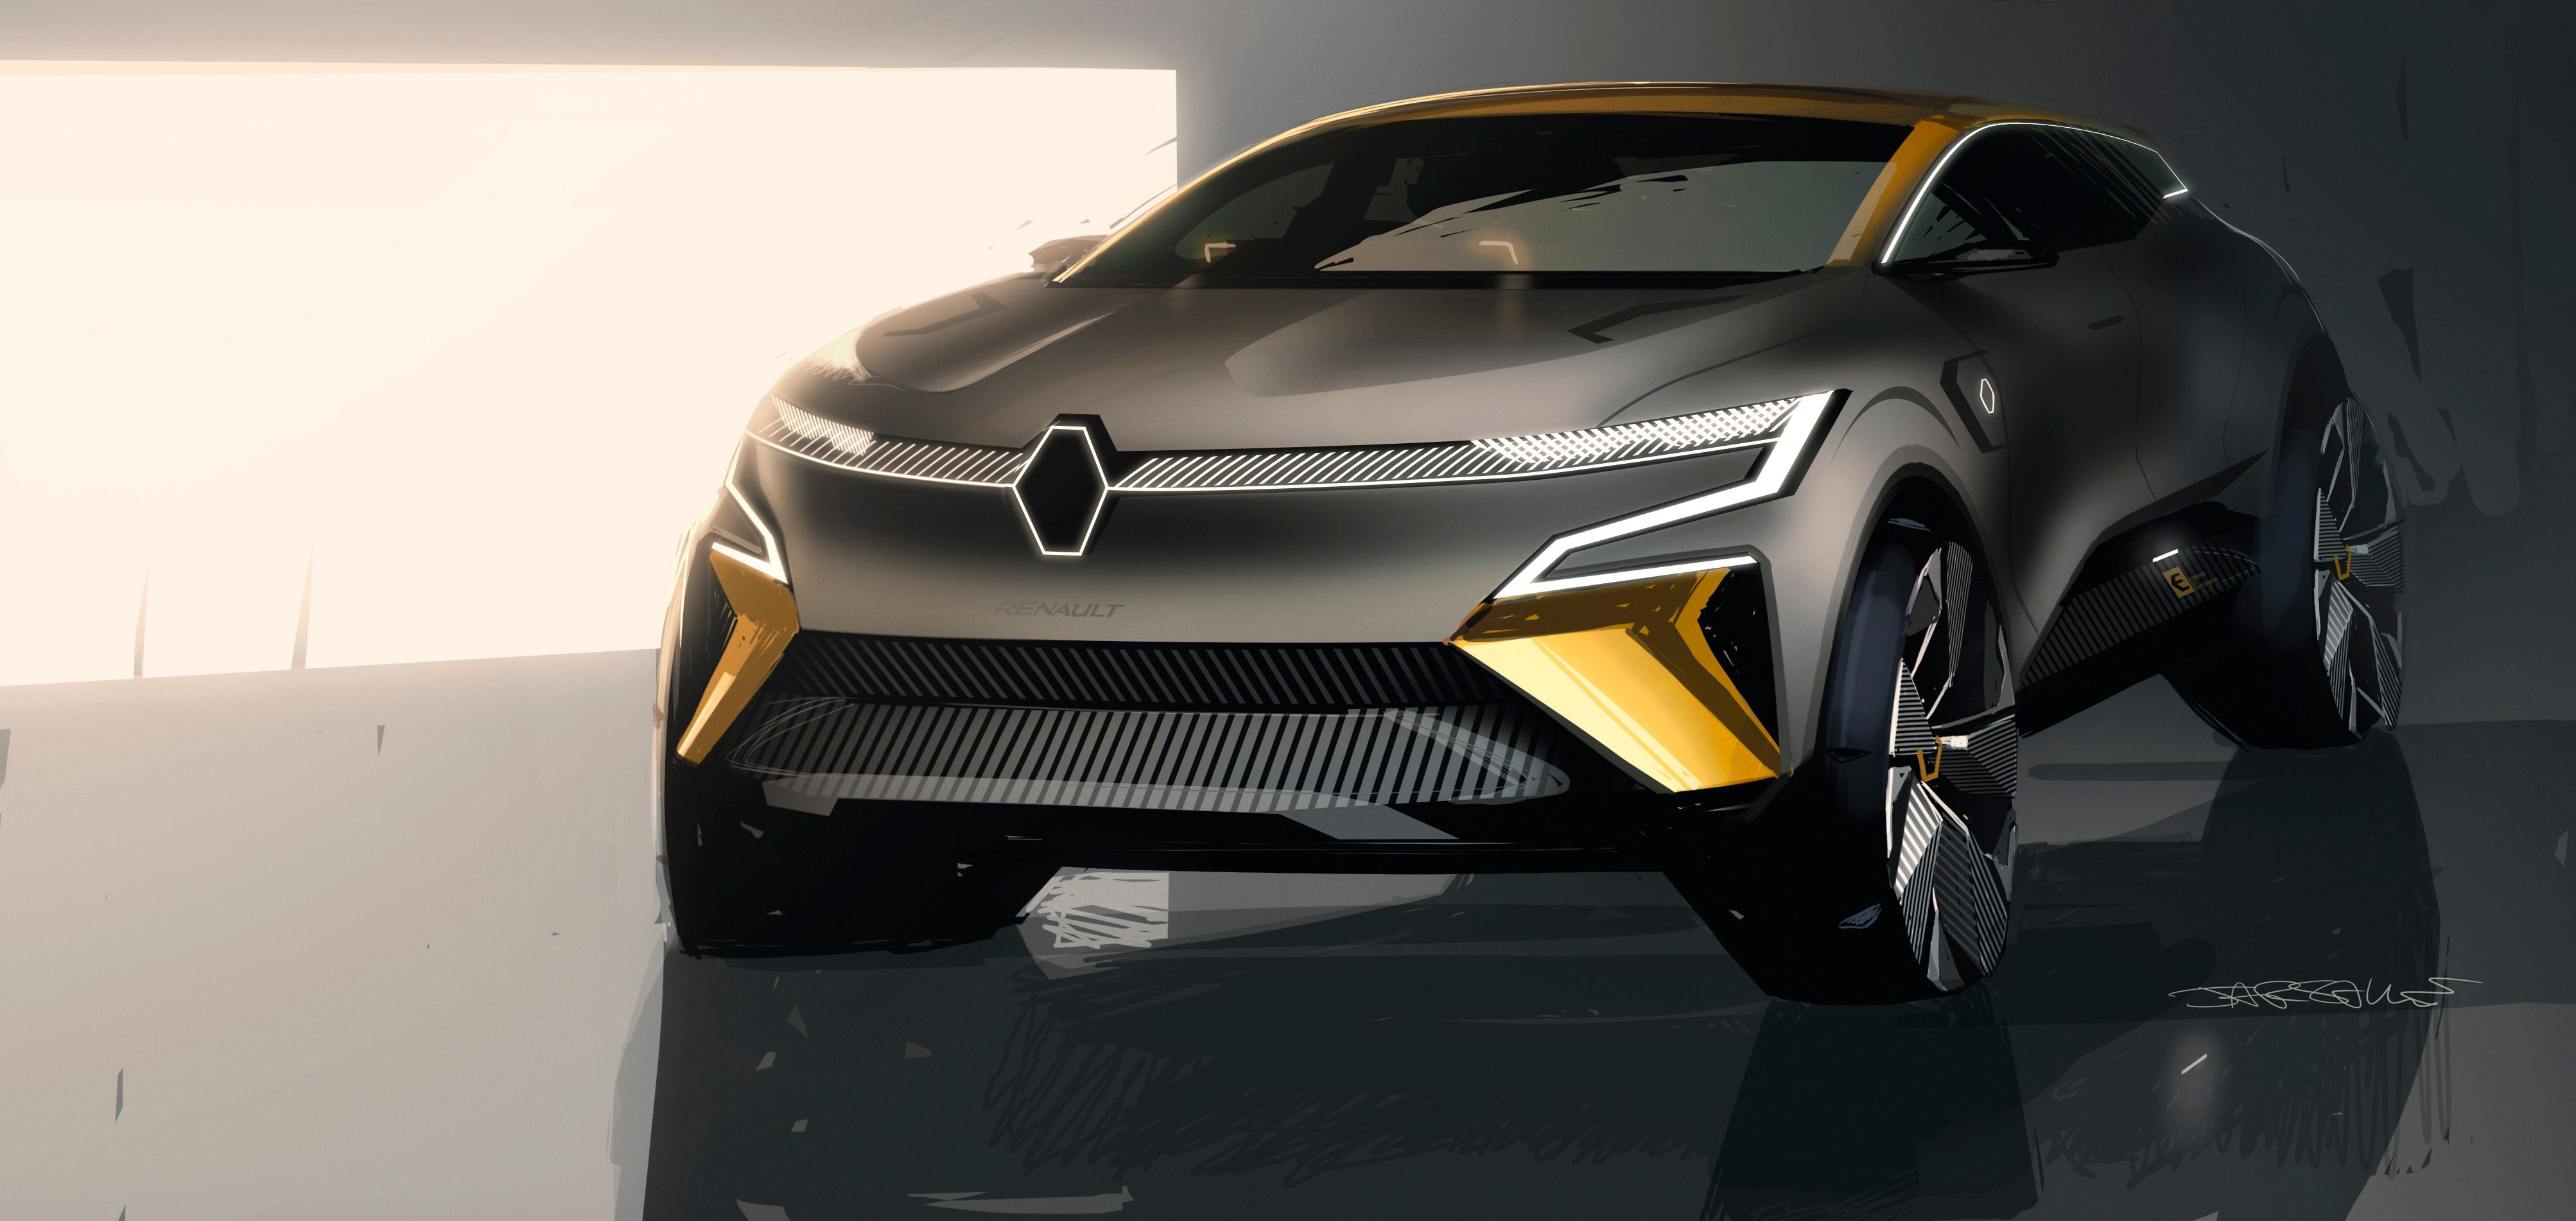 2020 Renault Megane eVision